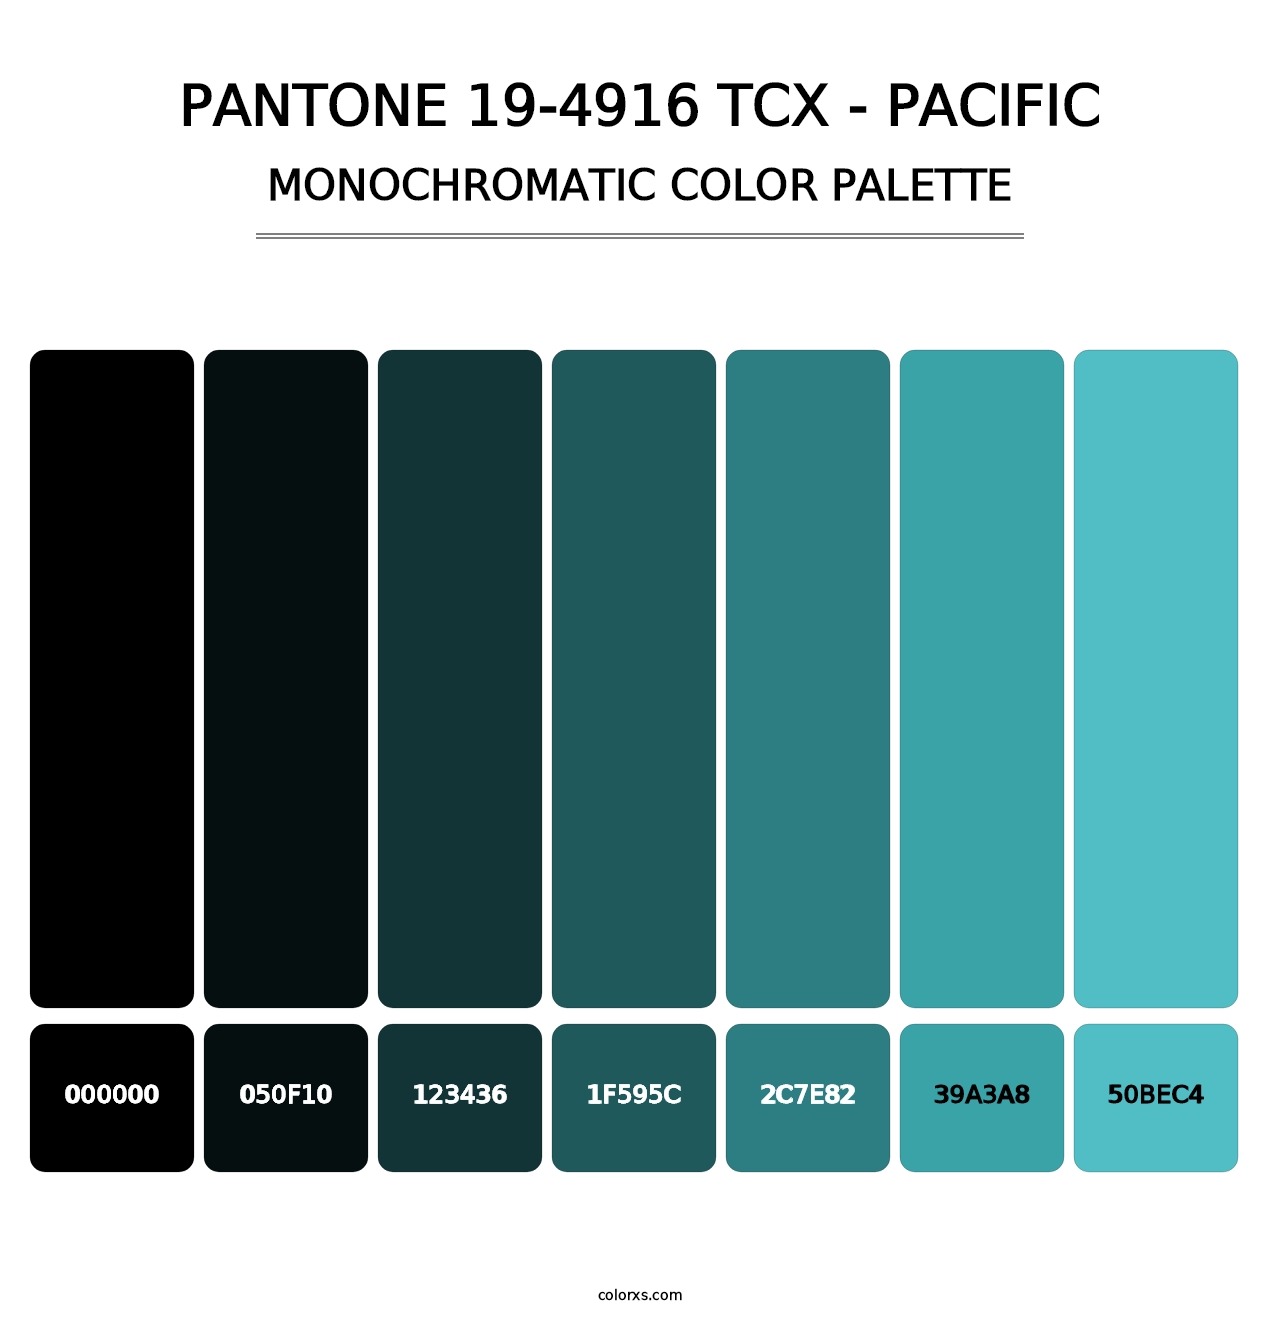 PANTONE 19-4916 TCX - Pacific - Monochromatic Color Palette